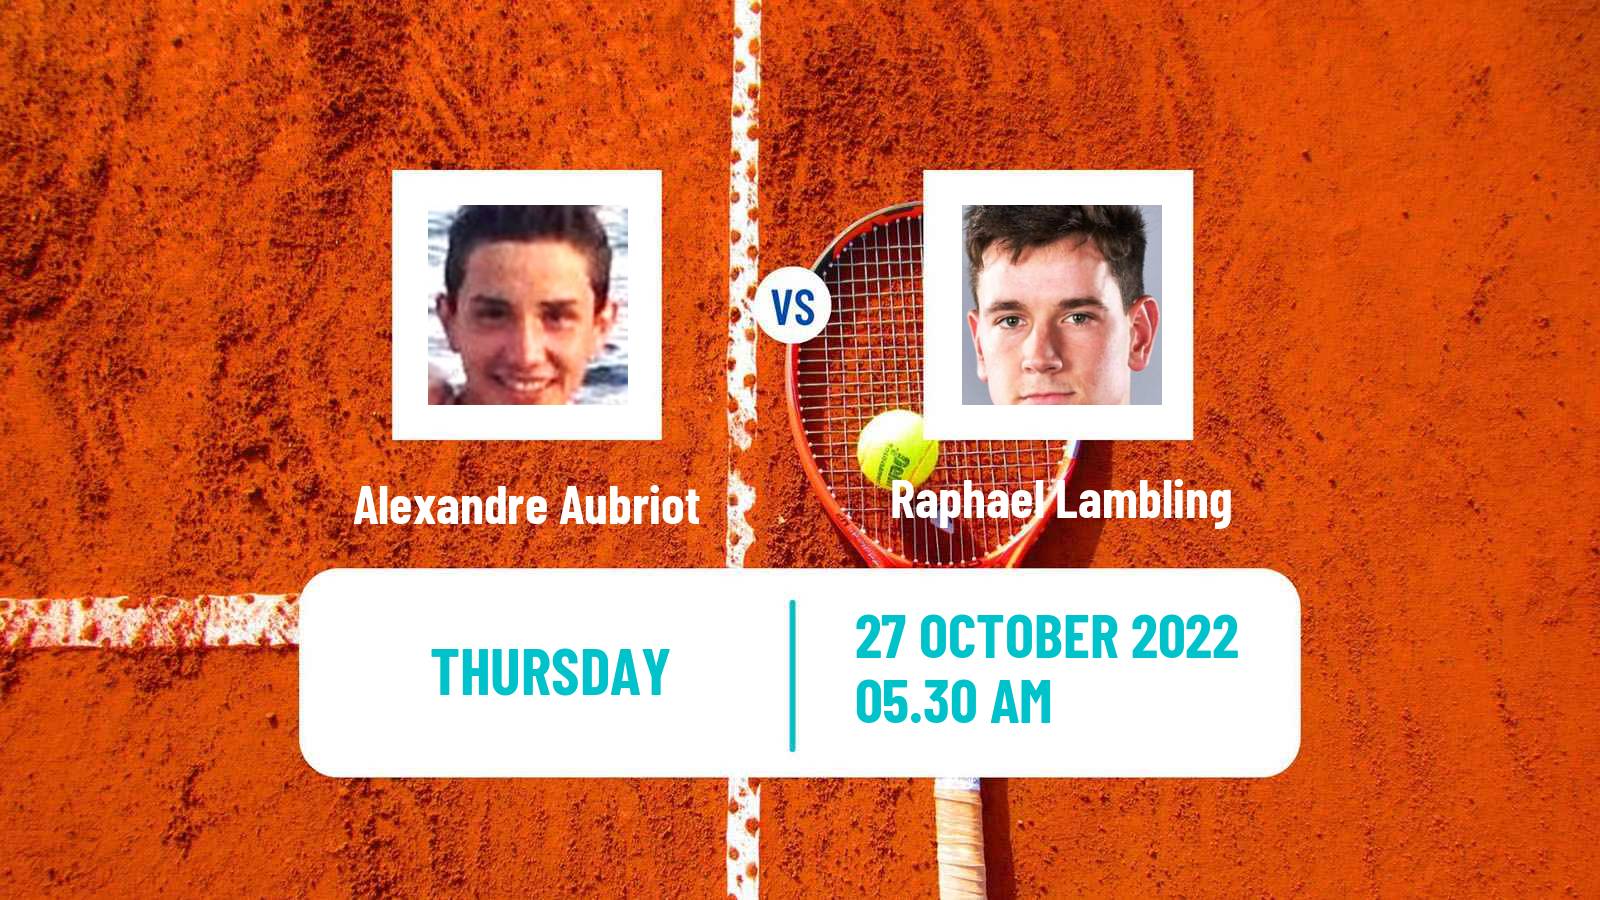 Tennis ITF Tournaments Alexandre Aubriot - Raphael Lambling